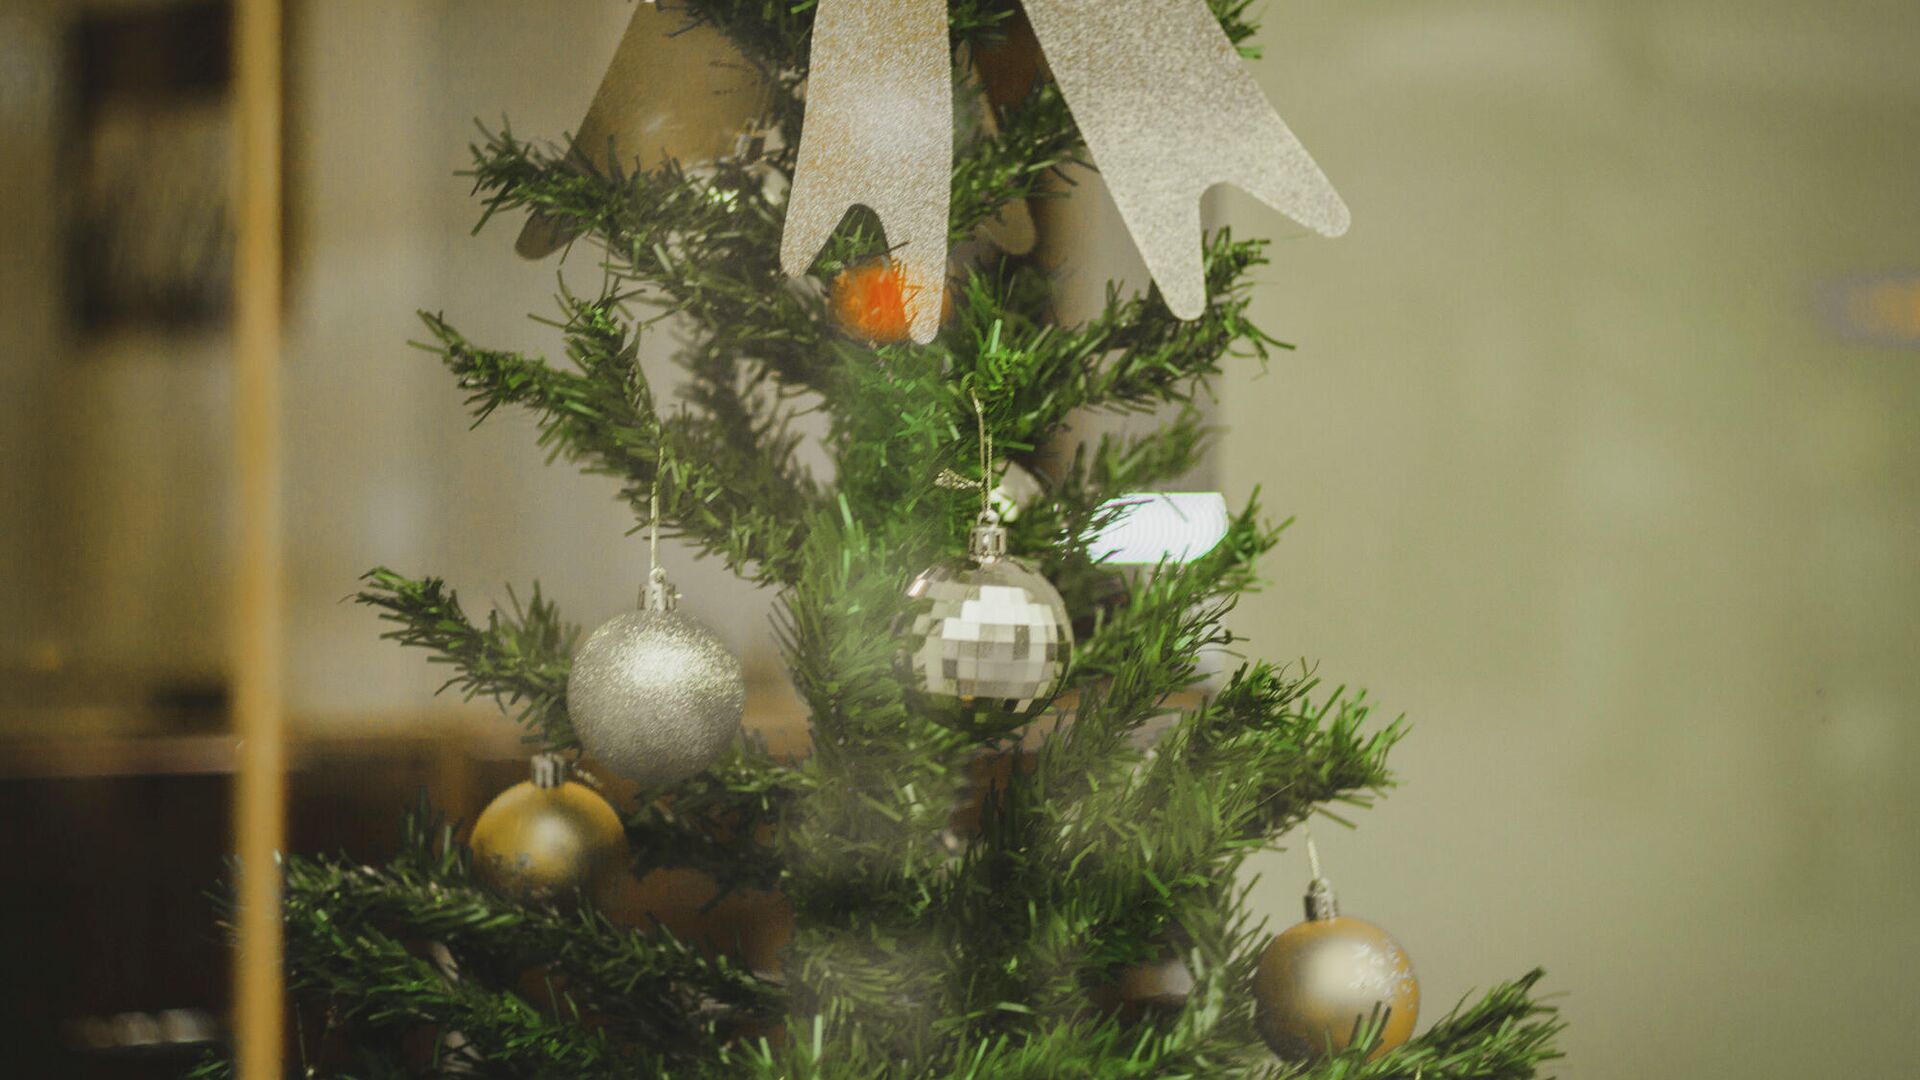 Откуда пришла традиция ставить ёлку на Новый год и Рождество